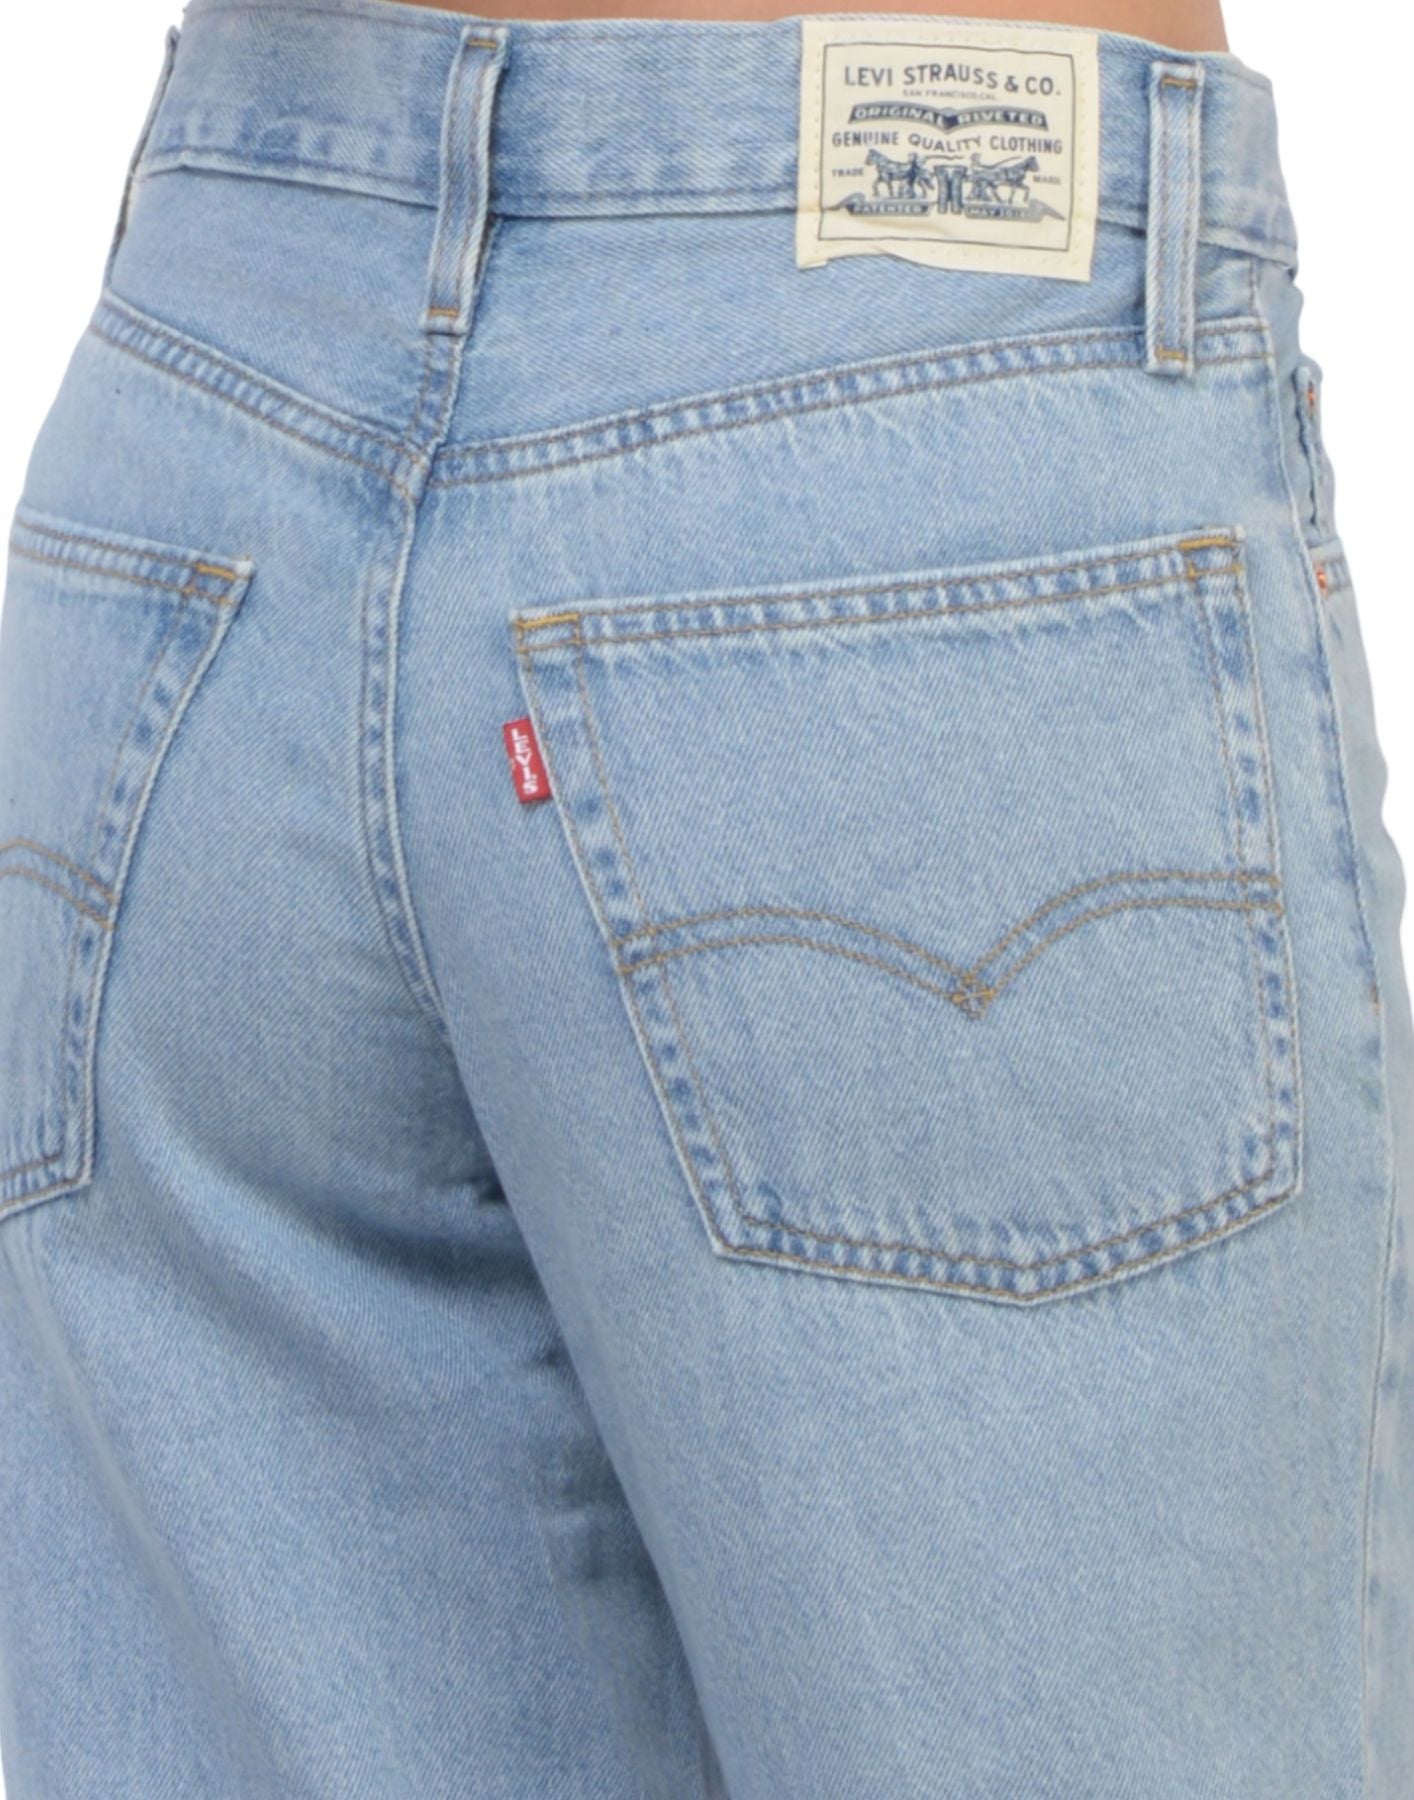 Jeans pour femme A34940033 Levi's